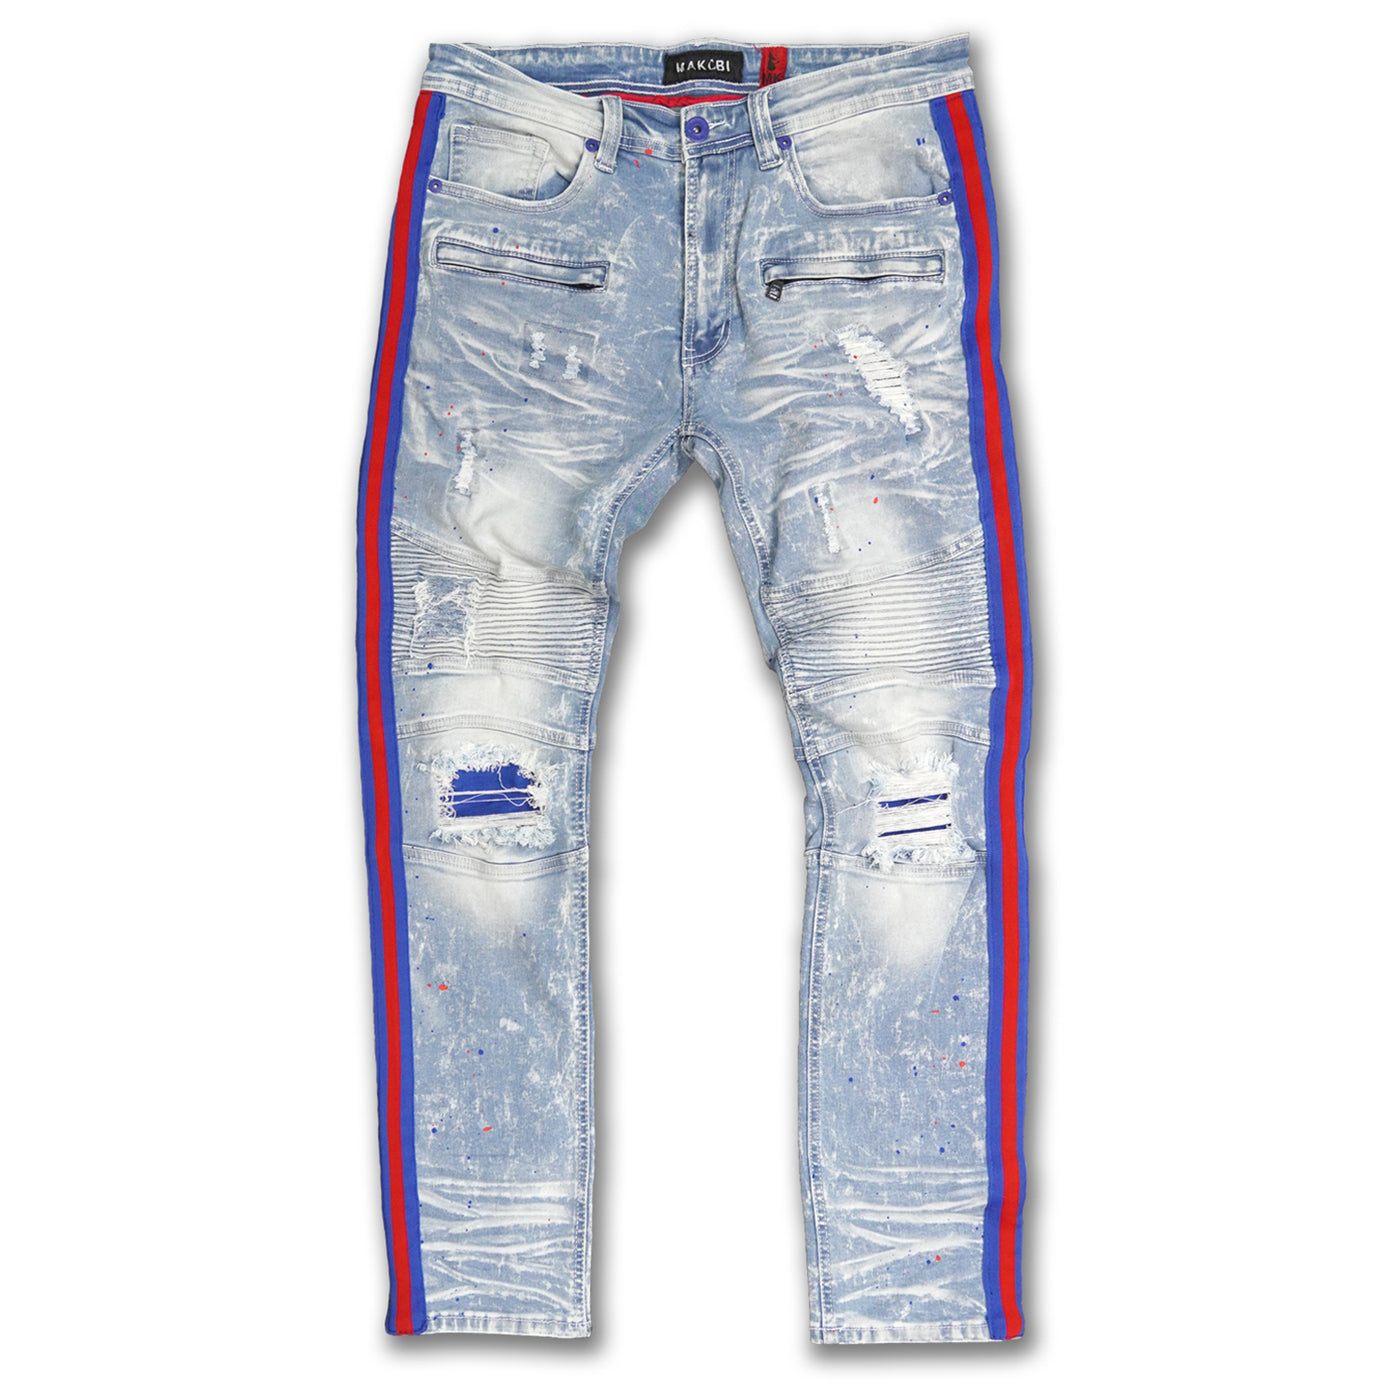 M1983 Destine Biker Jeans- Light Wash (red & blue side tape)